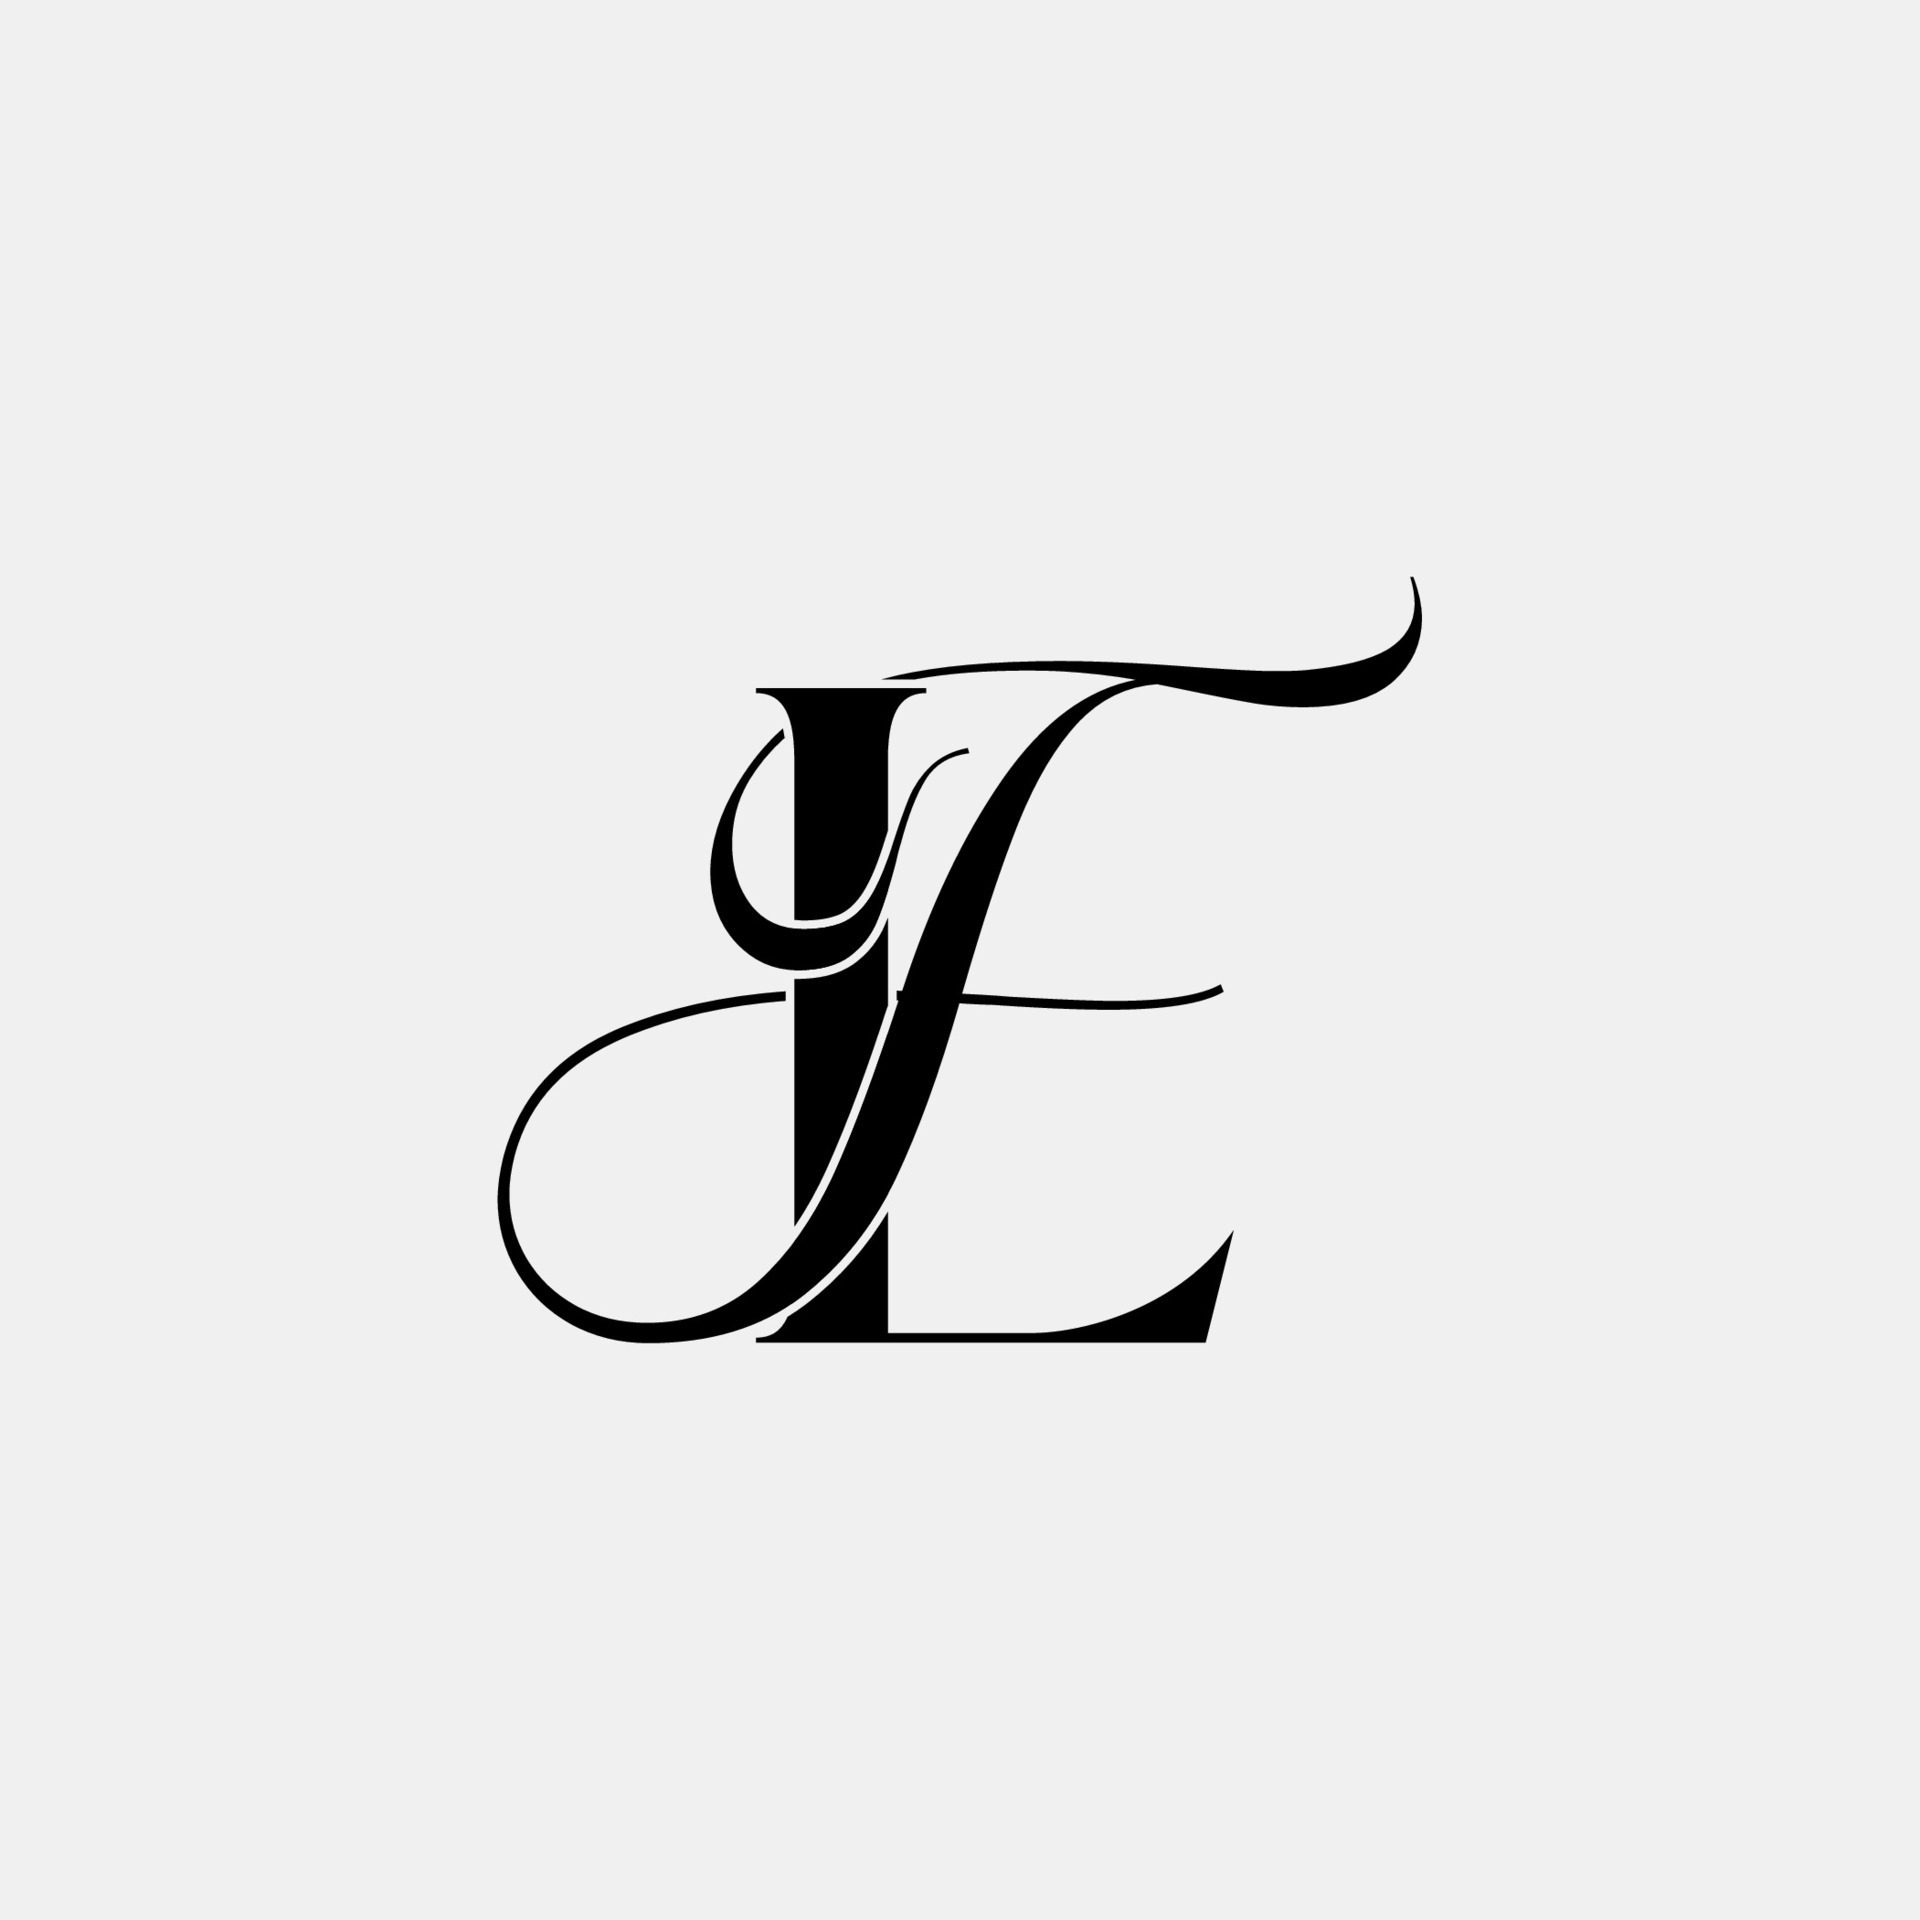 Vetor de Initial letter MF, overlapping elegant monogram logo, luxury  golden color do Stock